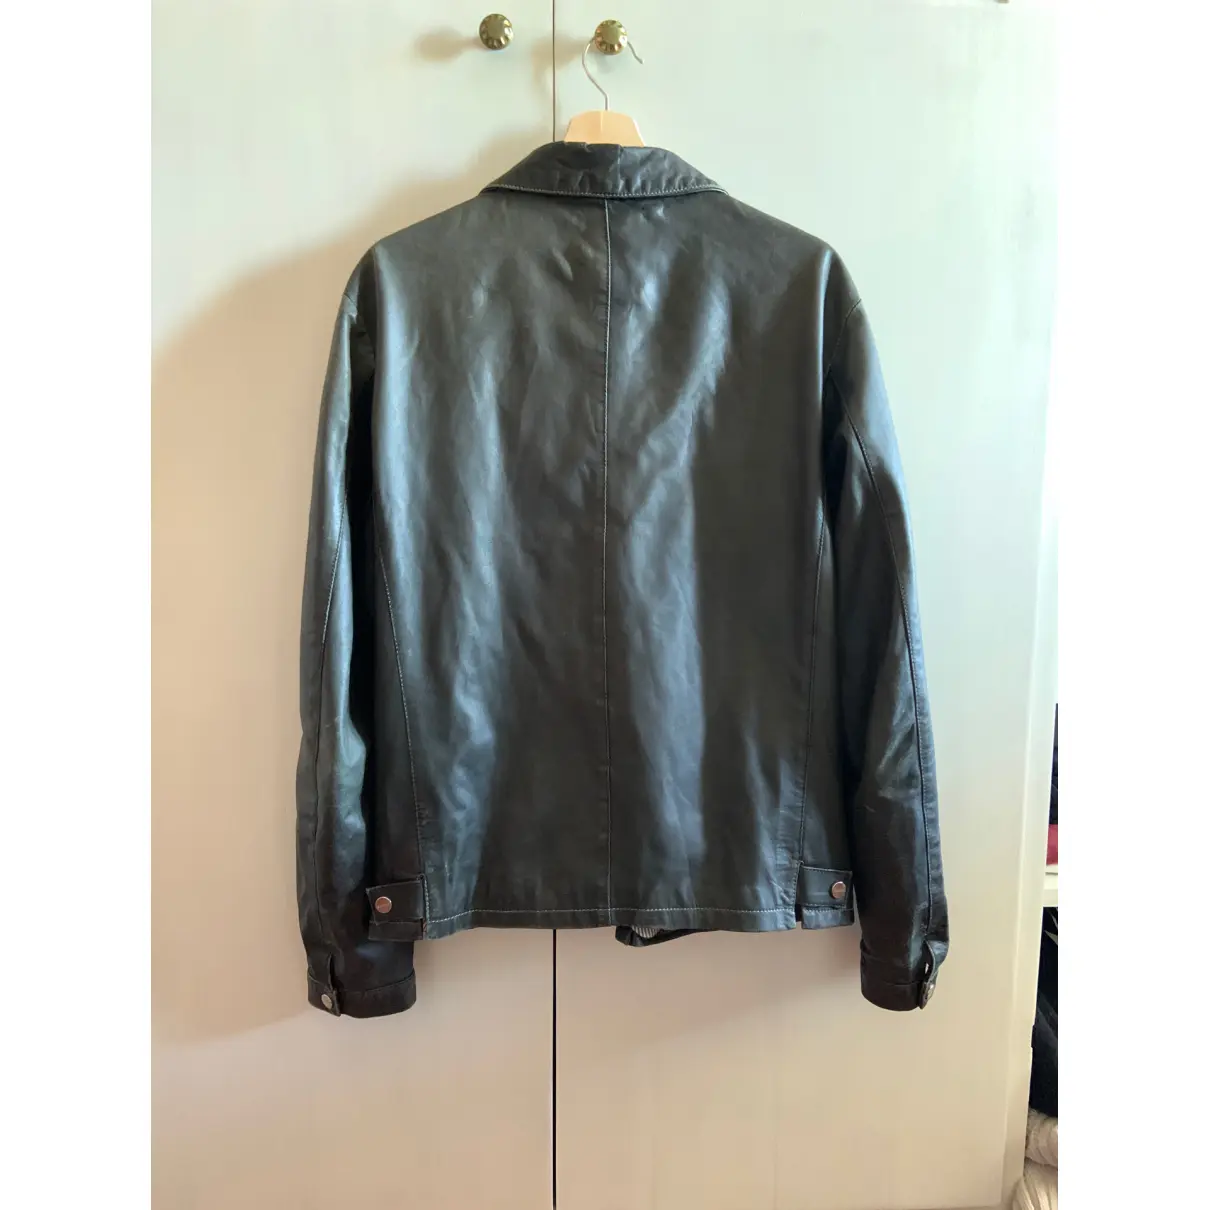 Buy Baldinini Leather vest online